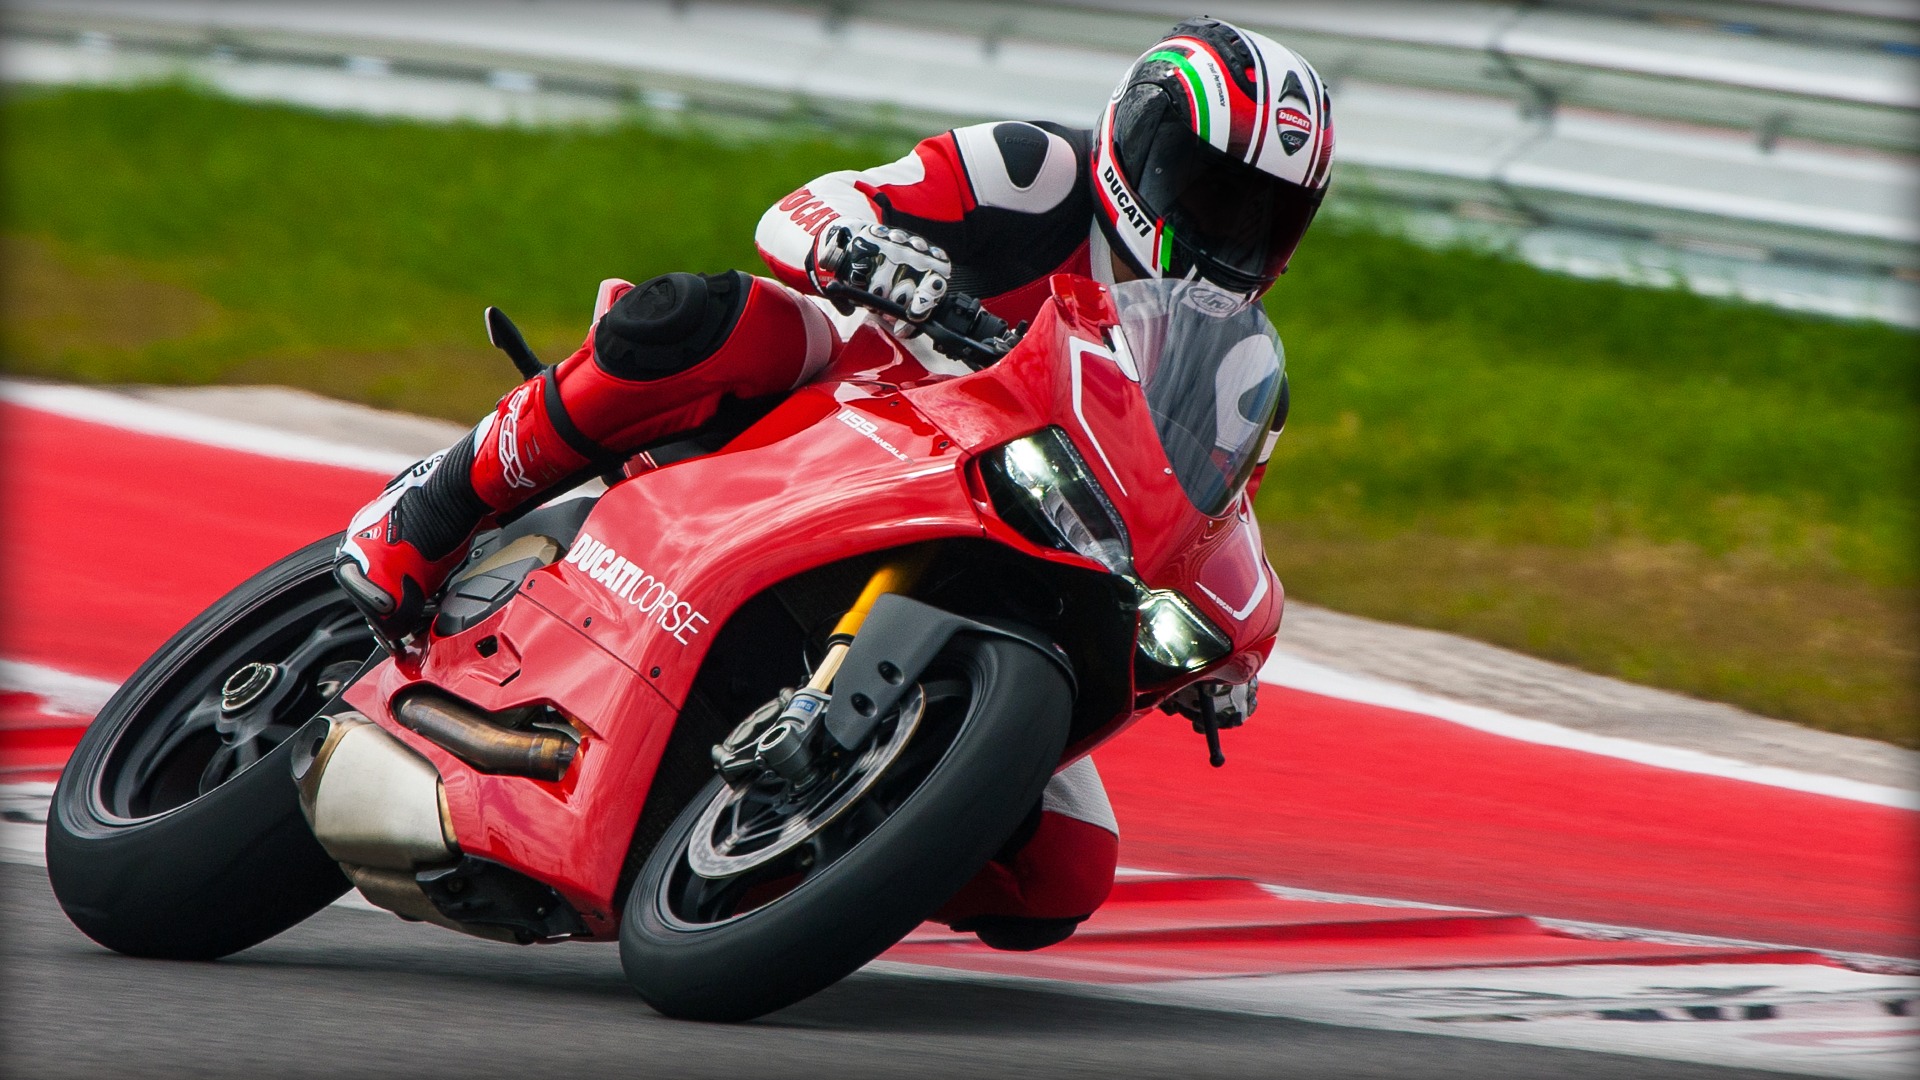 Ducati-Backgrounds-wallpaer-Full-HD-08